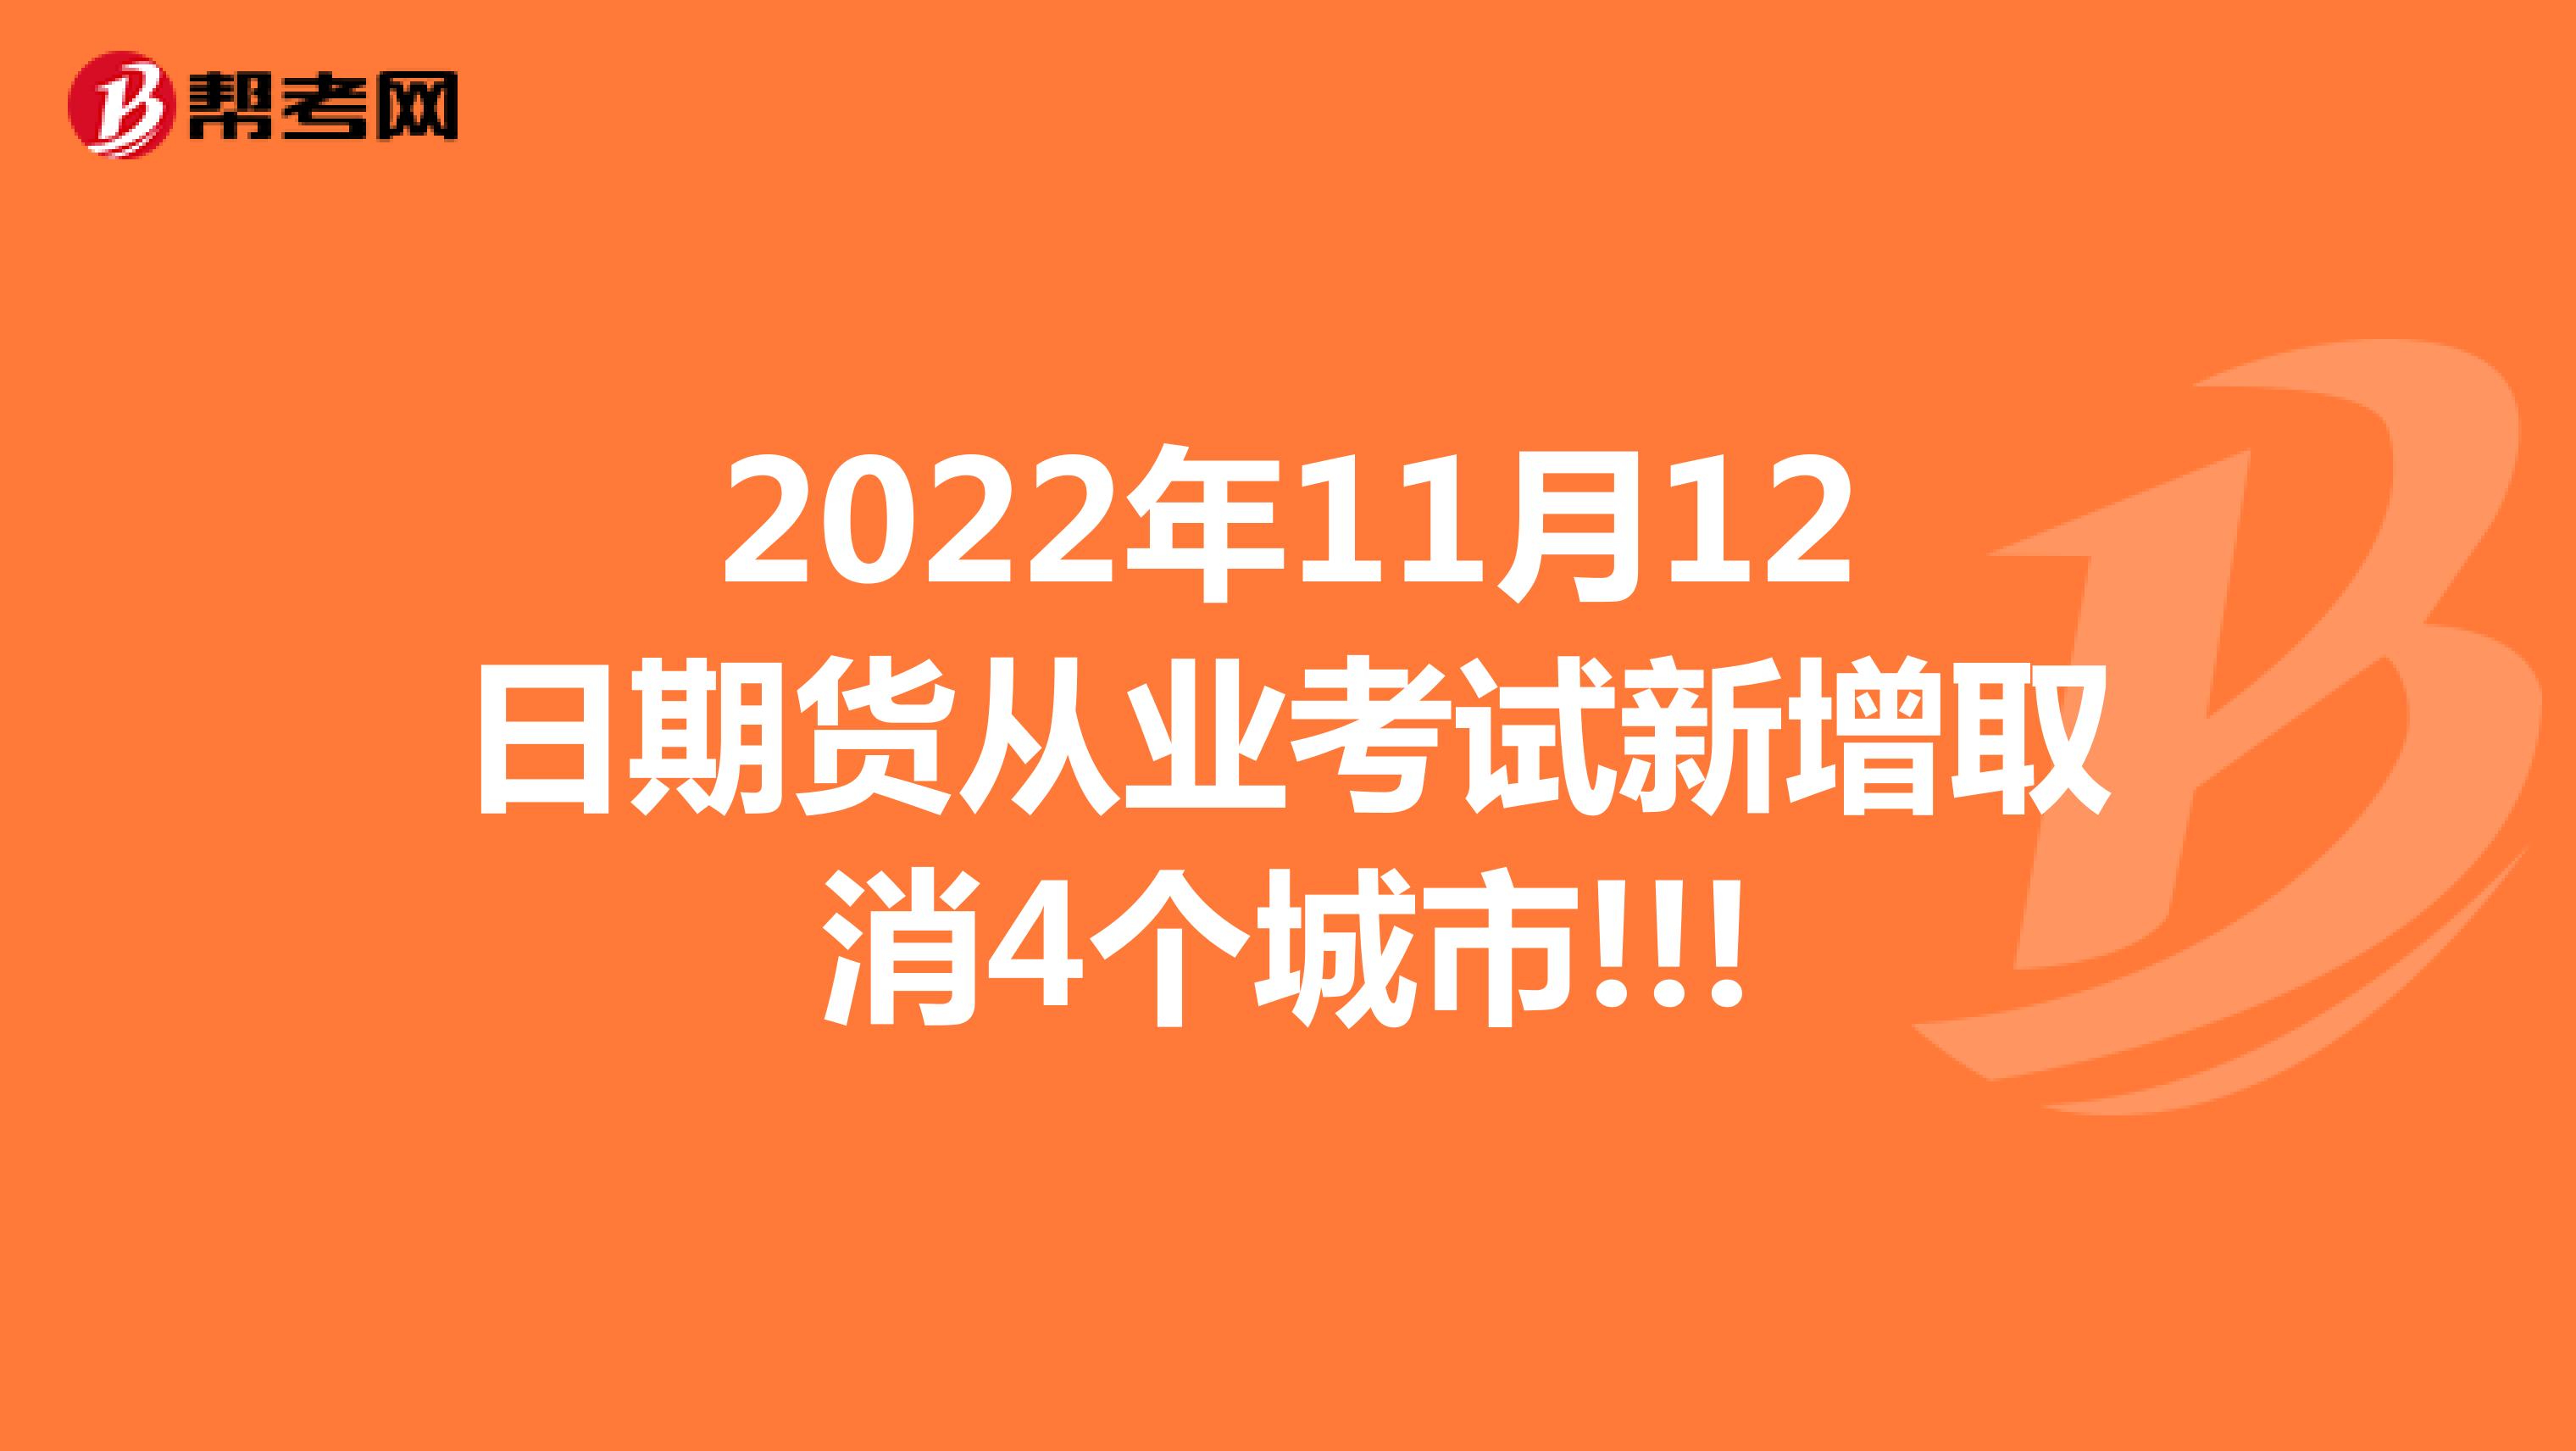 2022年11月12日期货从业考试新增取消4个城市!!!